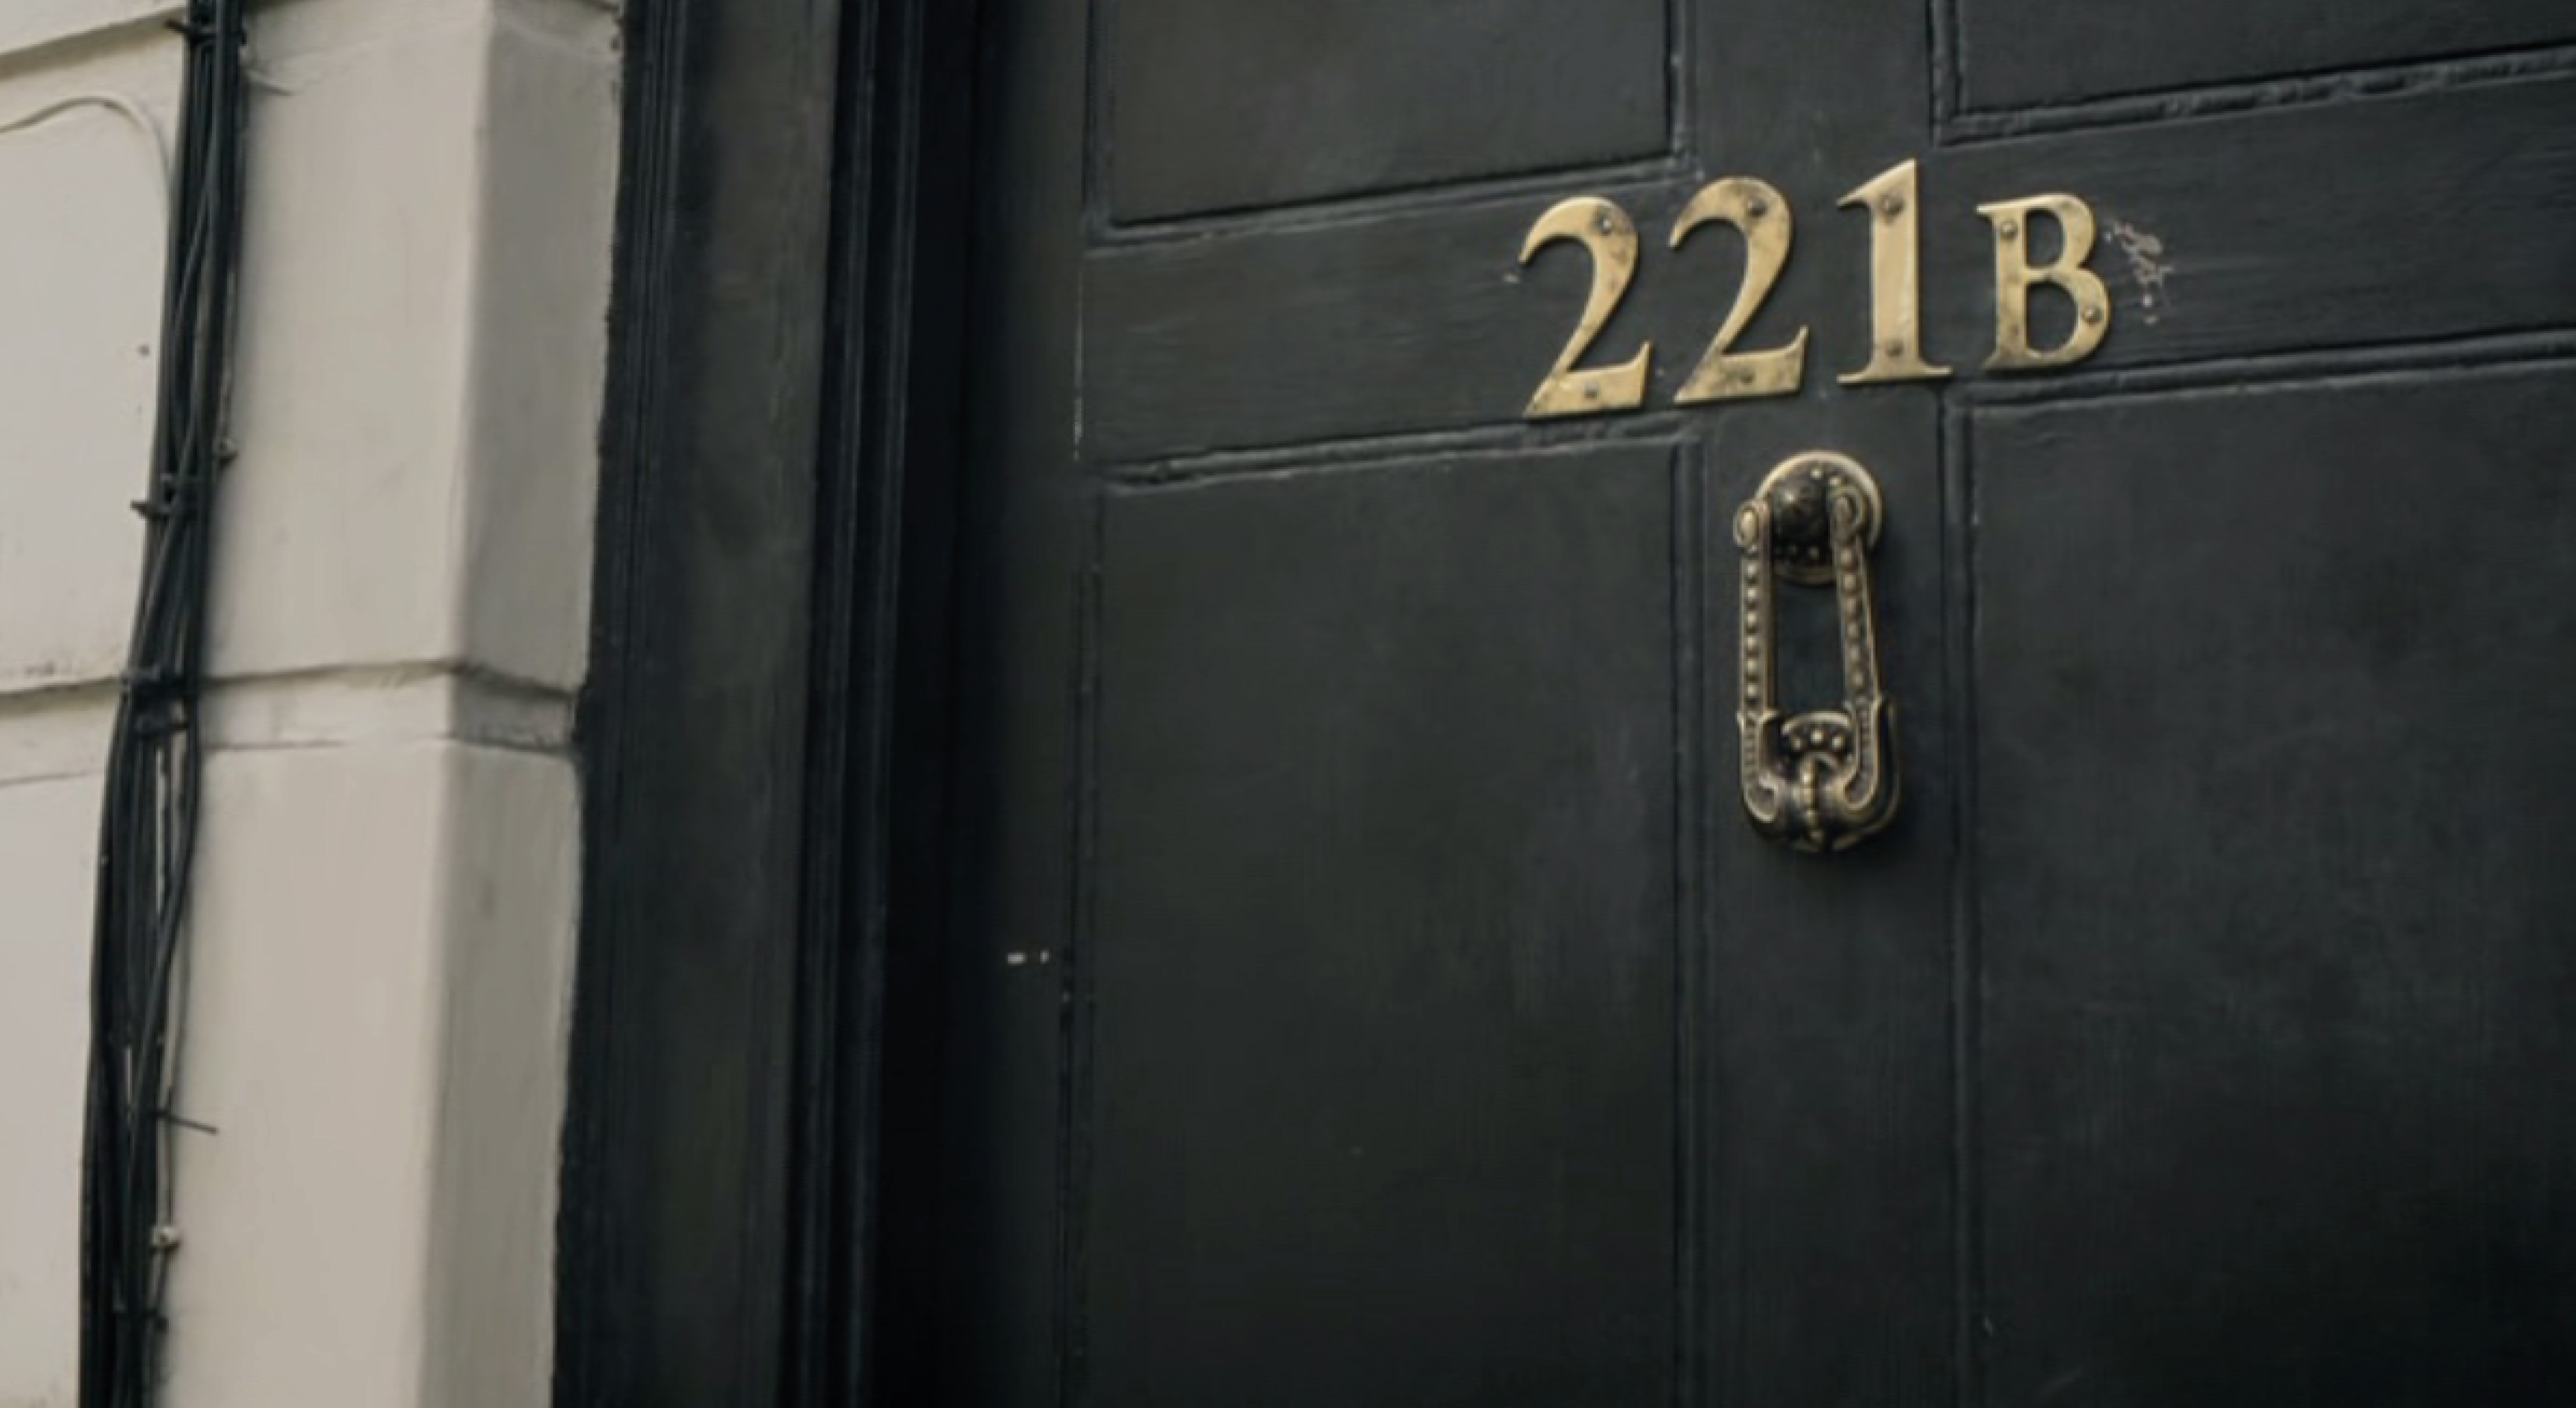 221 b Baker Street